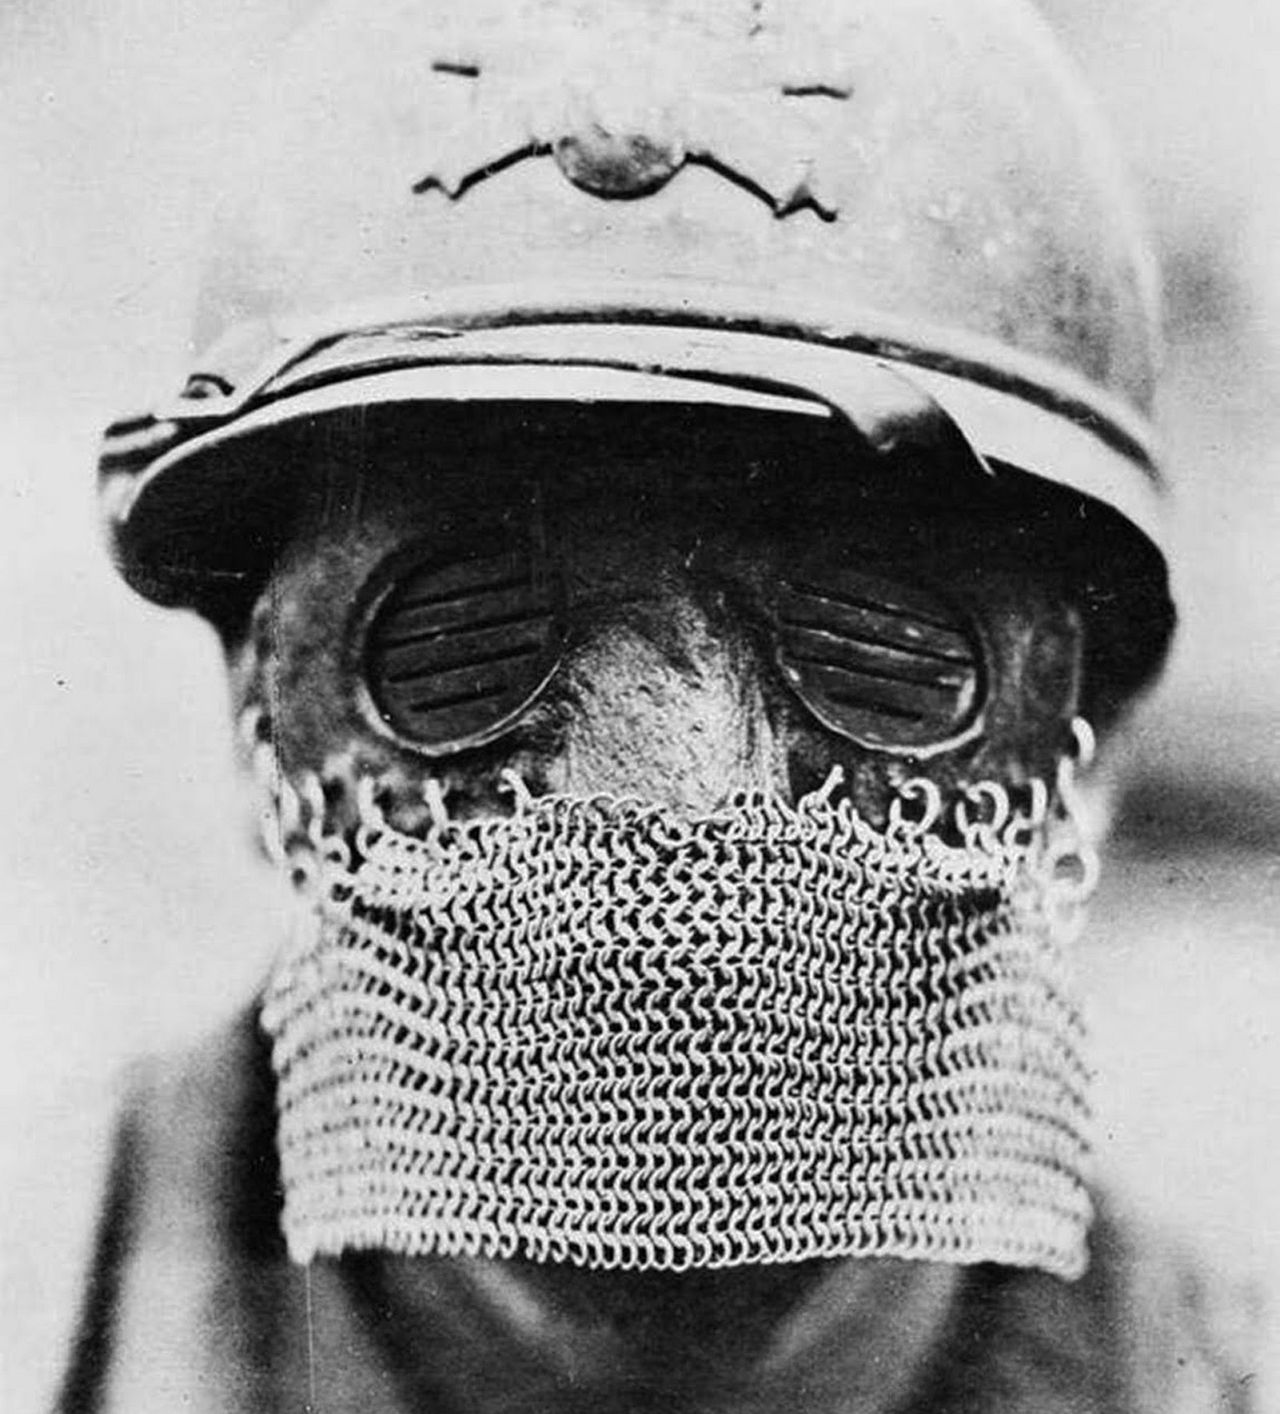 Maseczka, która naprawdę chroni. Wojskowa maska ze stalową kolczugą